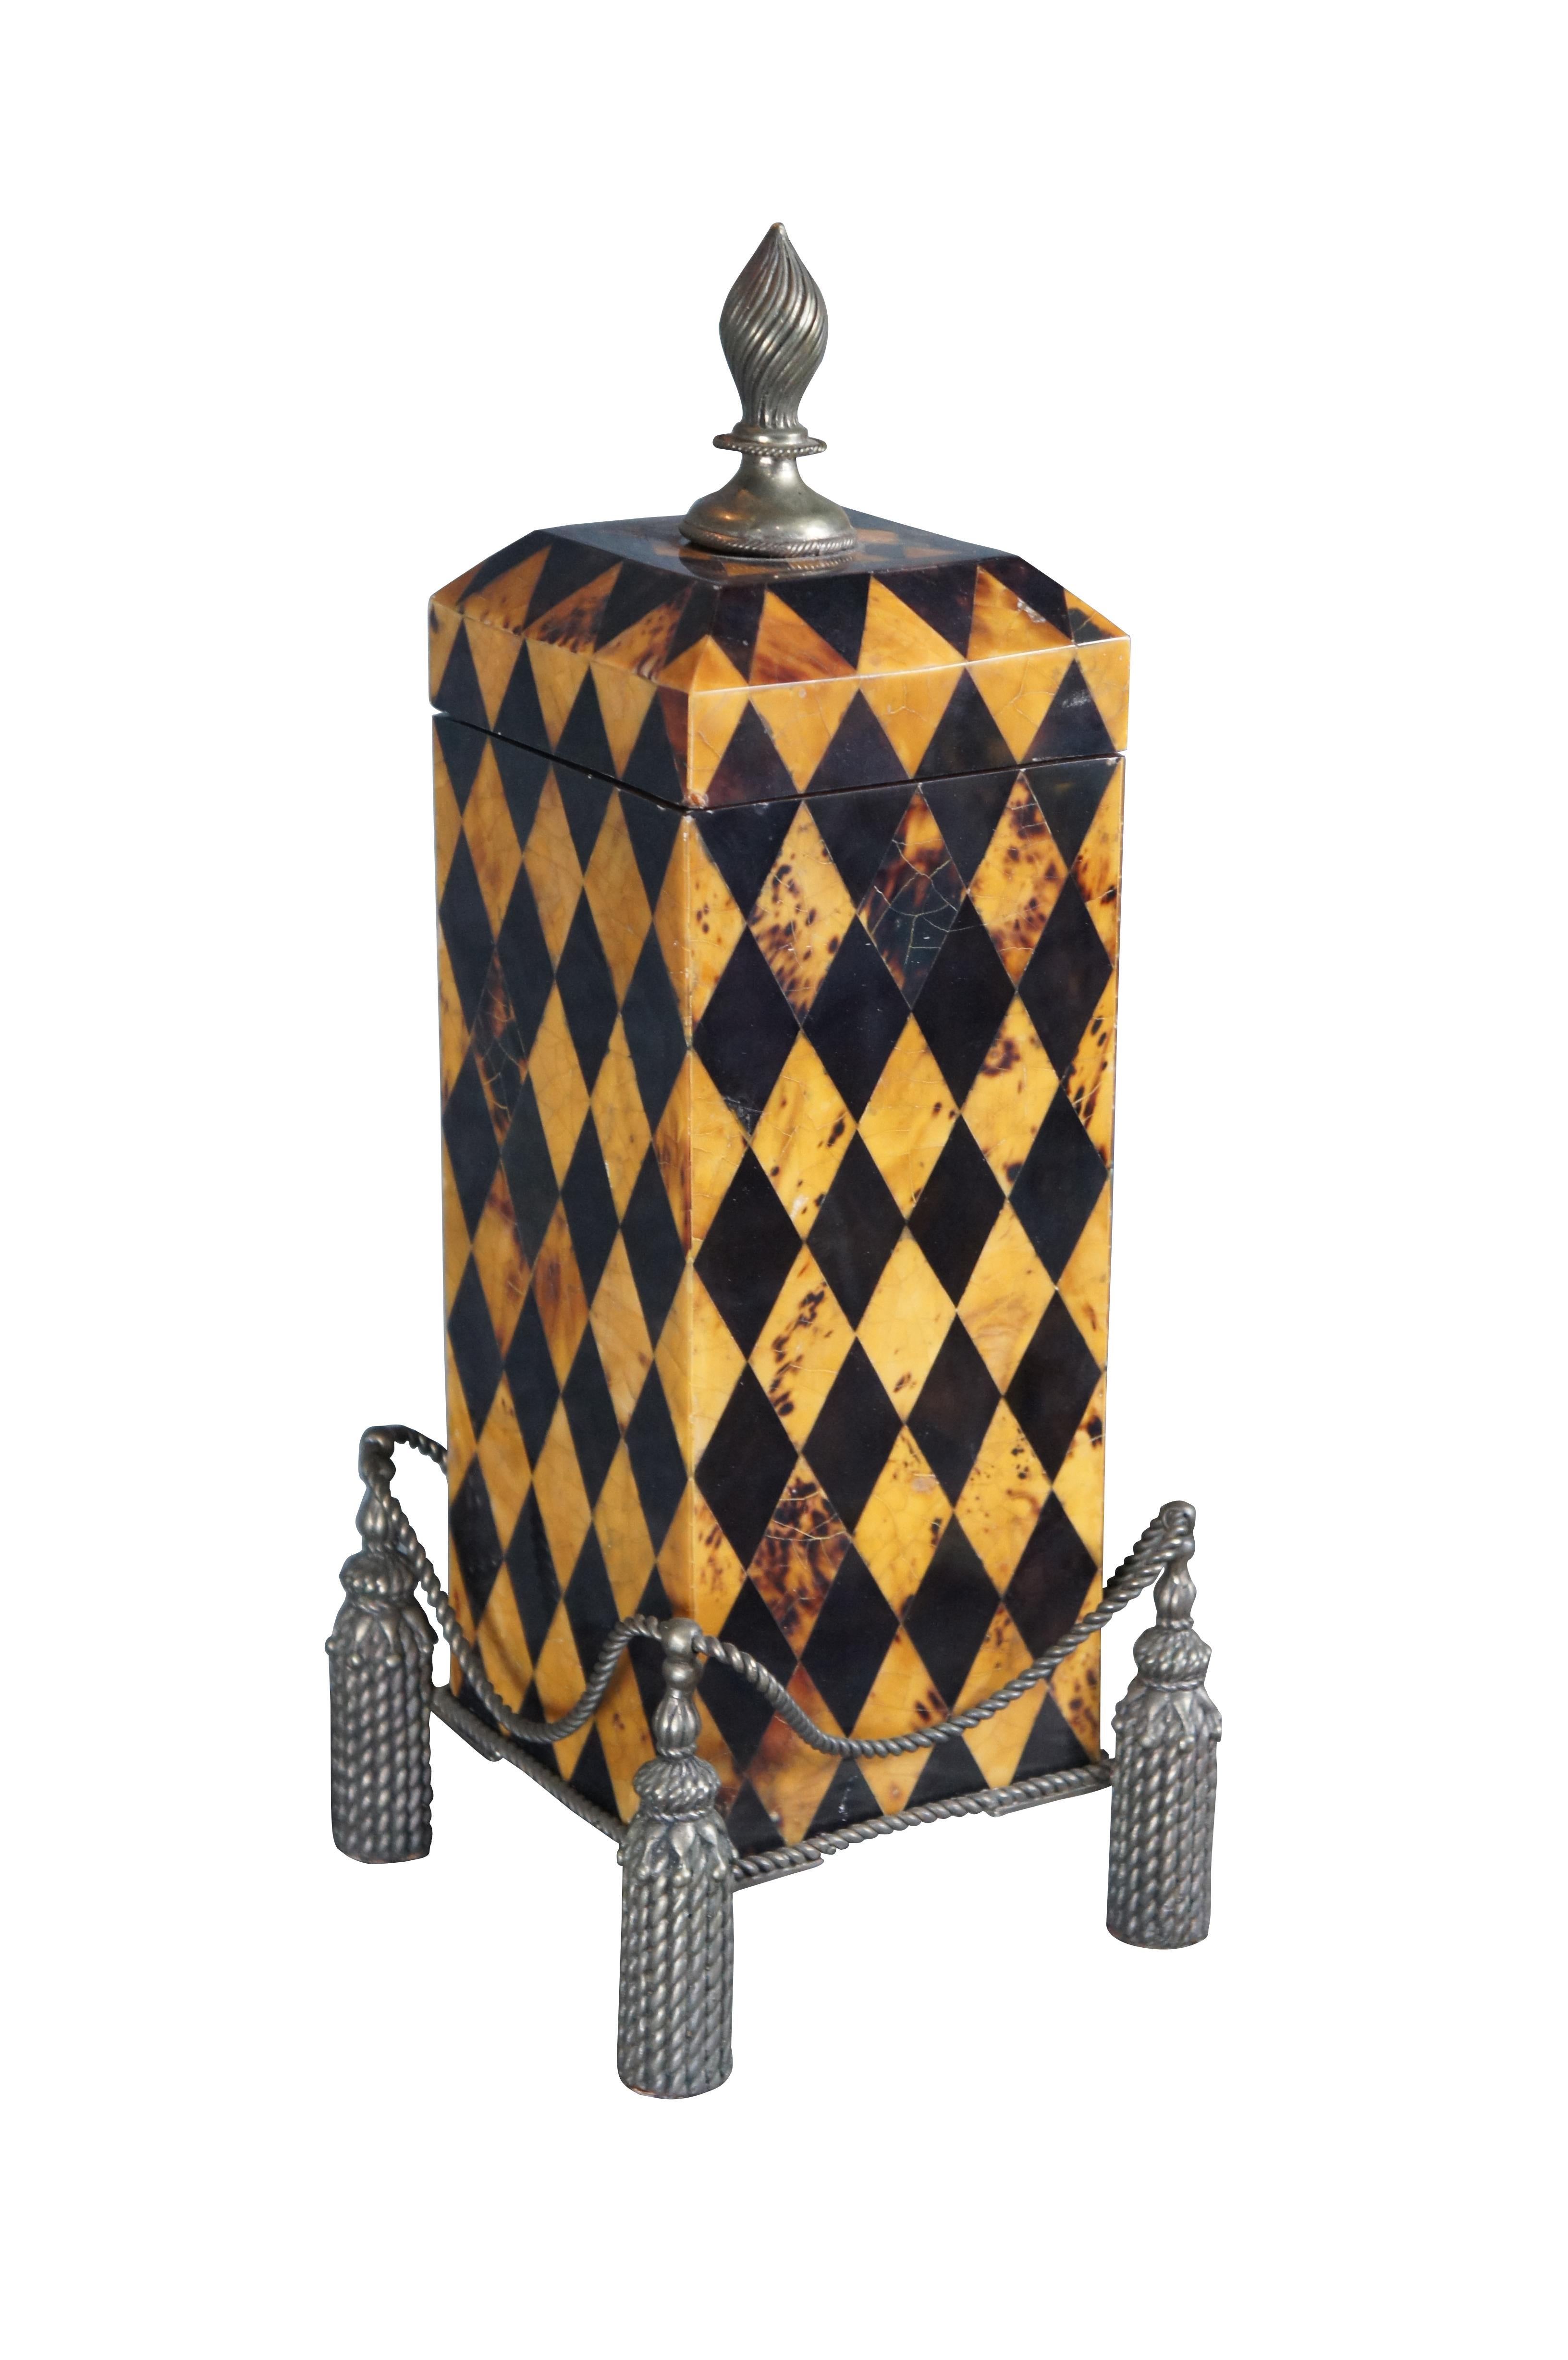 Maitland-Smith-Deckelbox/Urne, Ende des 20. Jahrhunderts. Das schöne Harlekin-Muster der Penshell-Außenhülle ruht auf einem Sockel aus Messing im neoklassischen Stil mit Quasten. Der Deckel öffnet sich über einen trophäenförmigen Knauf zu einem mit